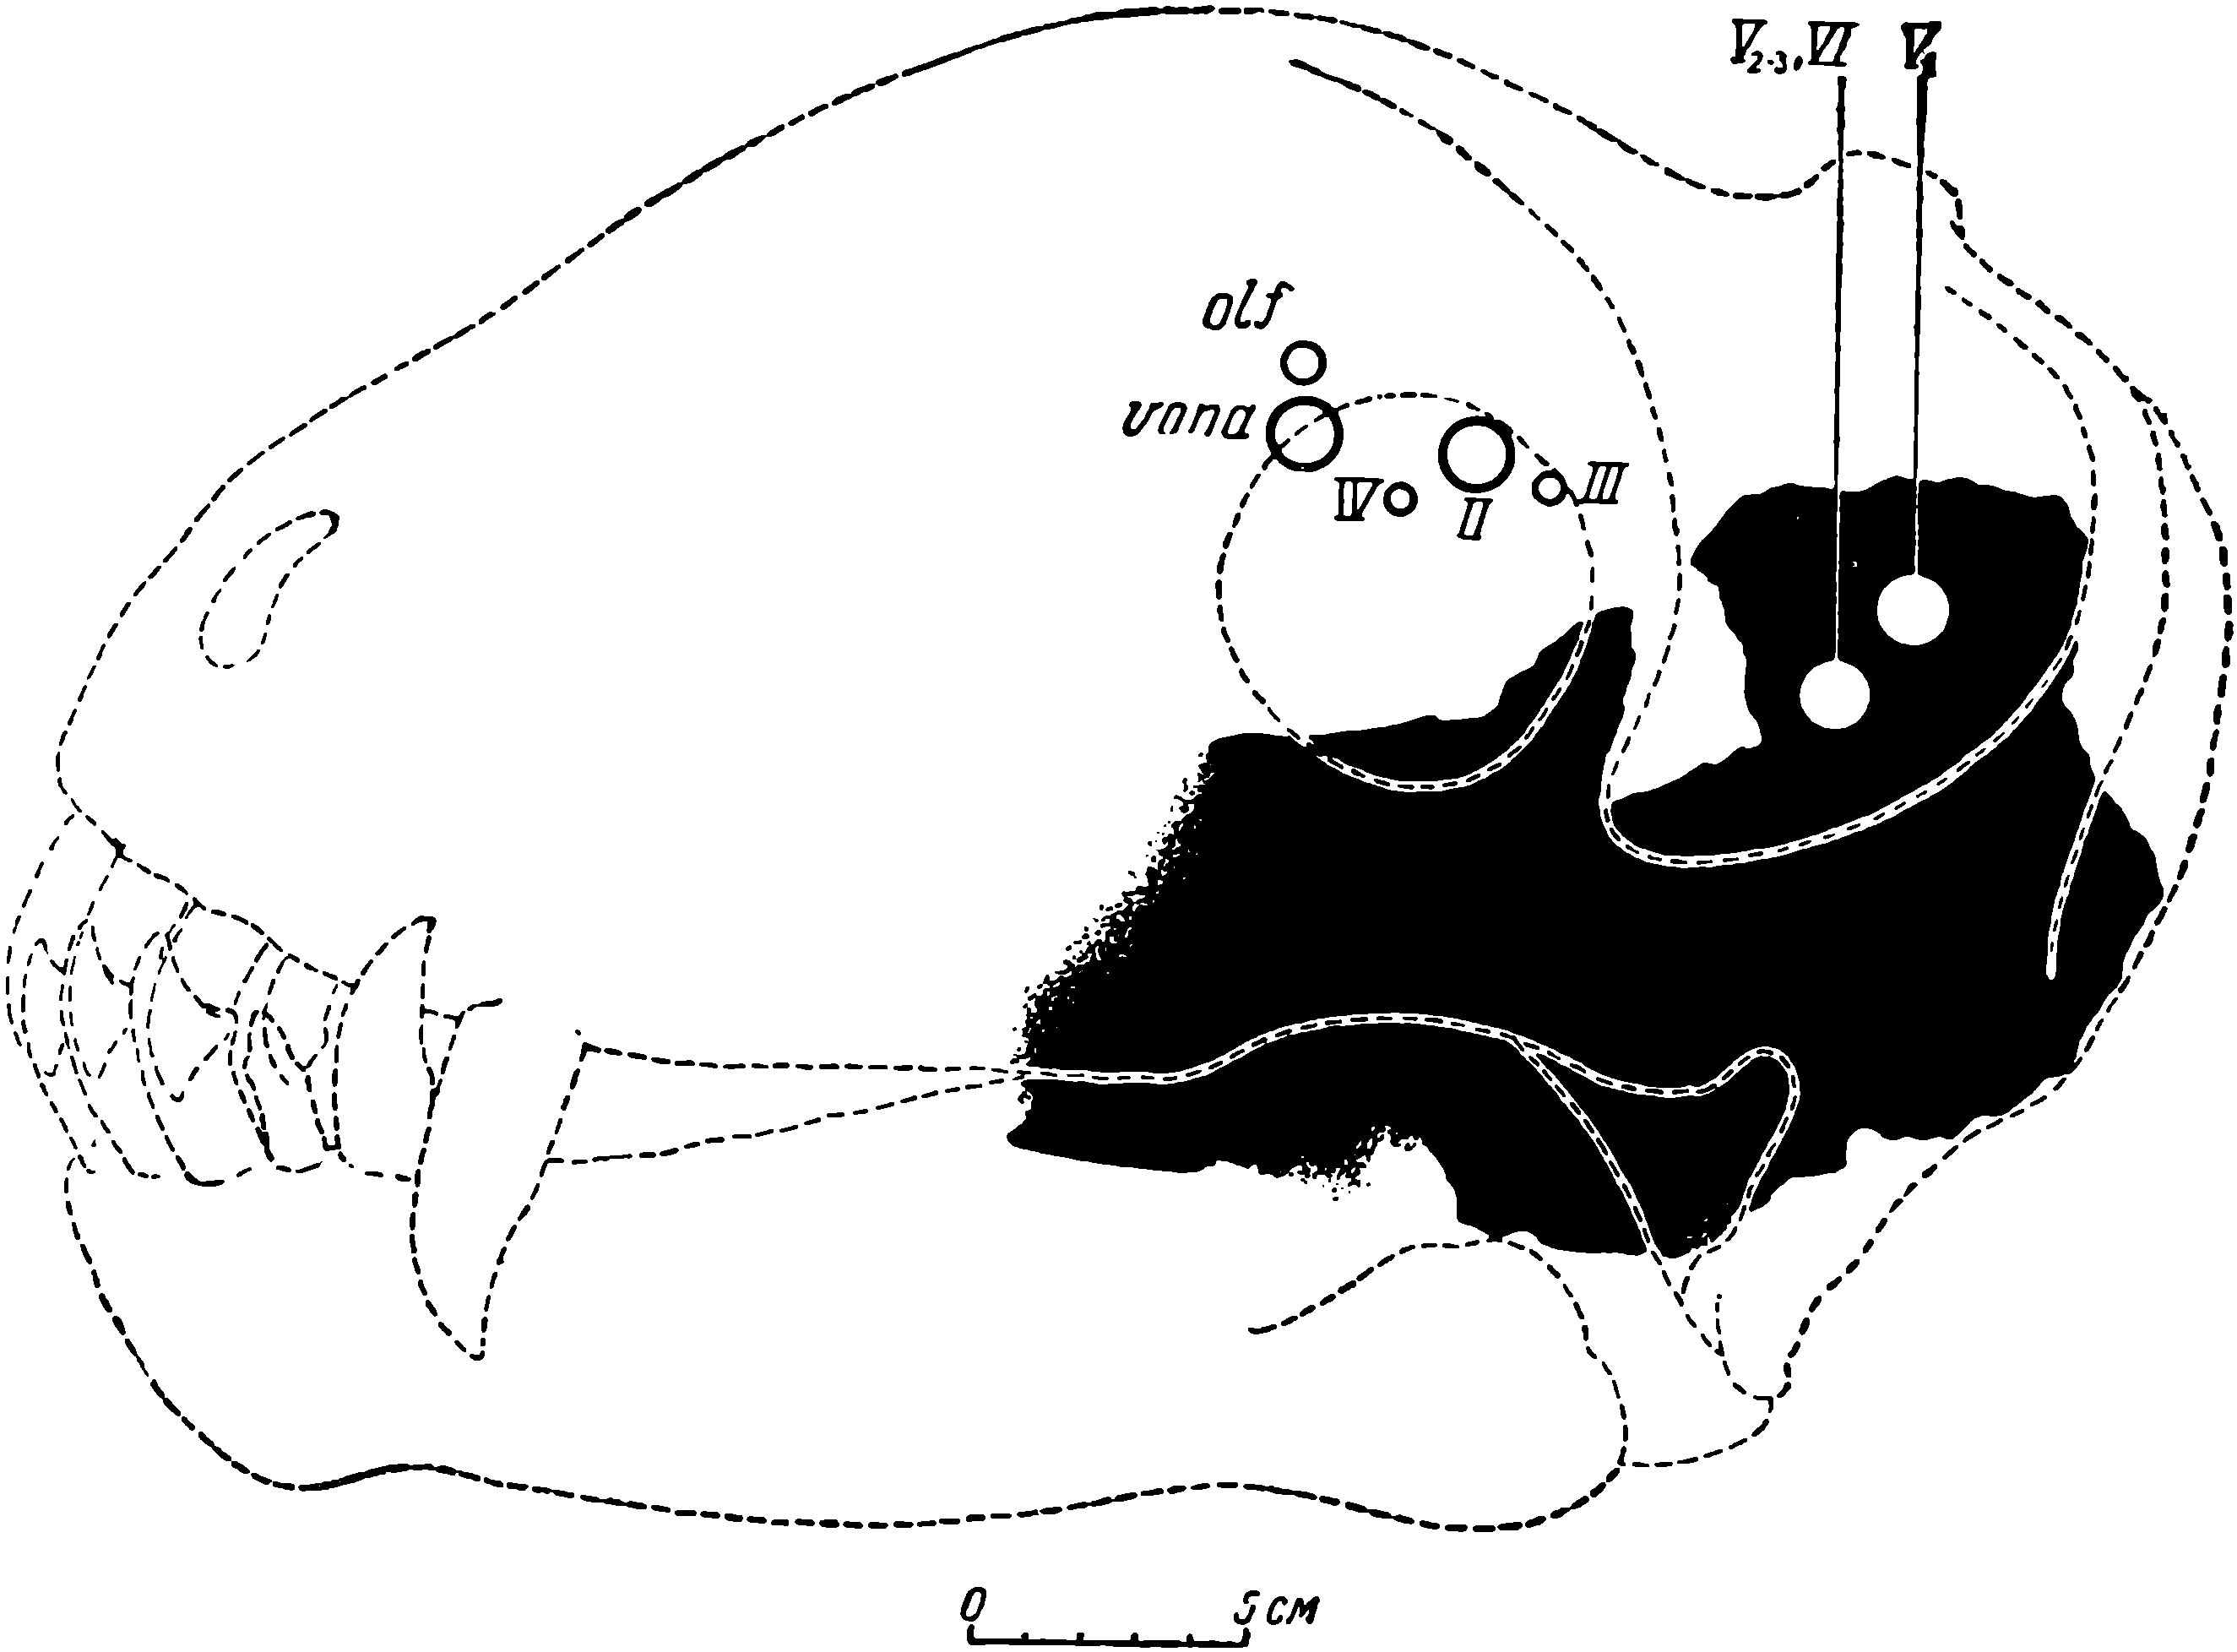 Рис. 9. Схема расположения отверстии черепных нервов на черепе дейтерозавра. Контуры и пропорции взяты с черепа ЛГМ/ЧМП № 1. Обозначения: olf — обонятельный нерв; vona — вомероназальный нерв; II — nervus opticus; III — n. oculomotoris; IV — n. trochlearis; V1 V2—3  — ветви тройничного нерва (n. trigeminus); VI — n. abducens. Черным обозначена сохранившаяся часть мозговой коробки черепа ЛГМ/ЧМП № 1. Остальные отверстия нервов сняты с черепа ЛГМ/ЧМП № 2